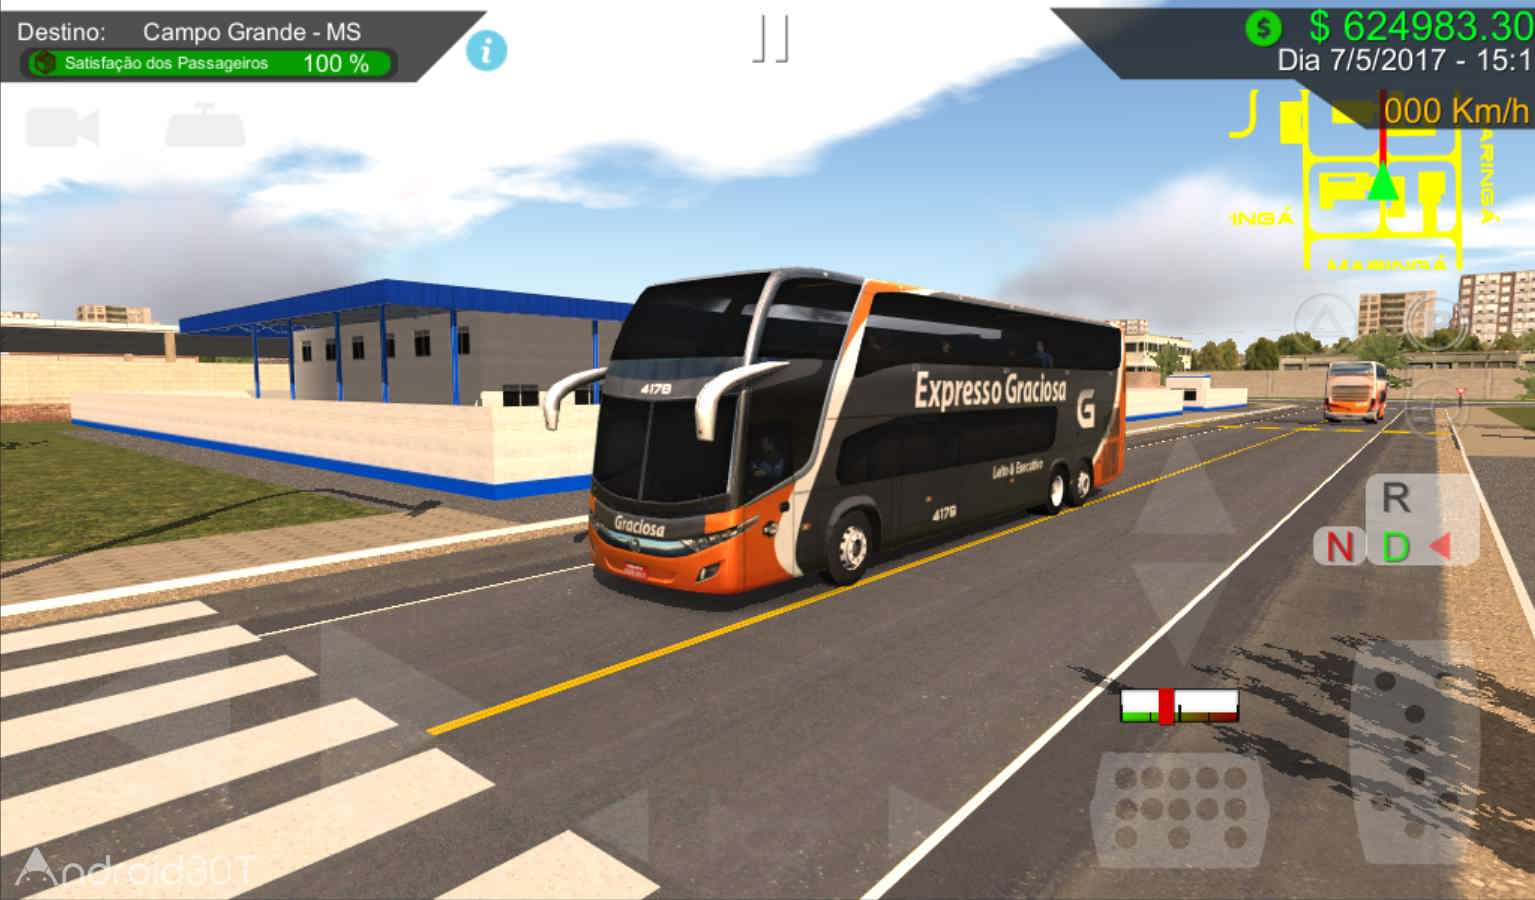 دانلود Heavy Bus Simulator 1.088 – بازی شبیه ساز اتوبوس برای اندروید